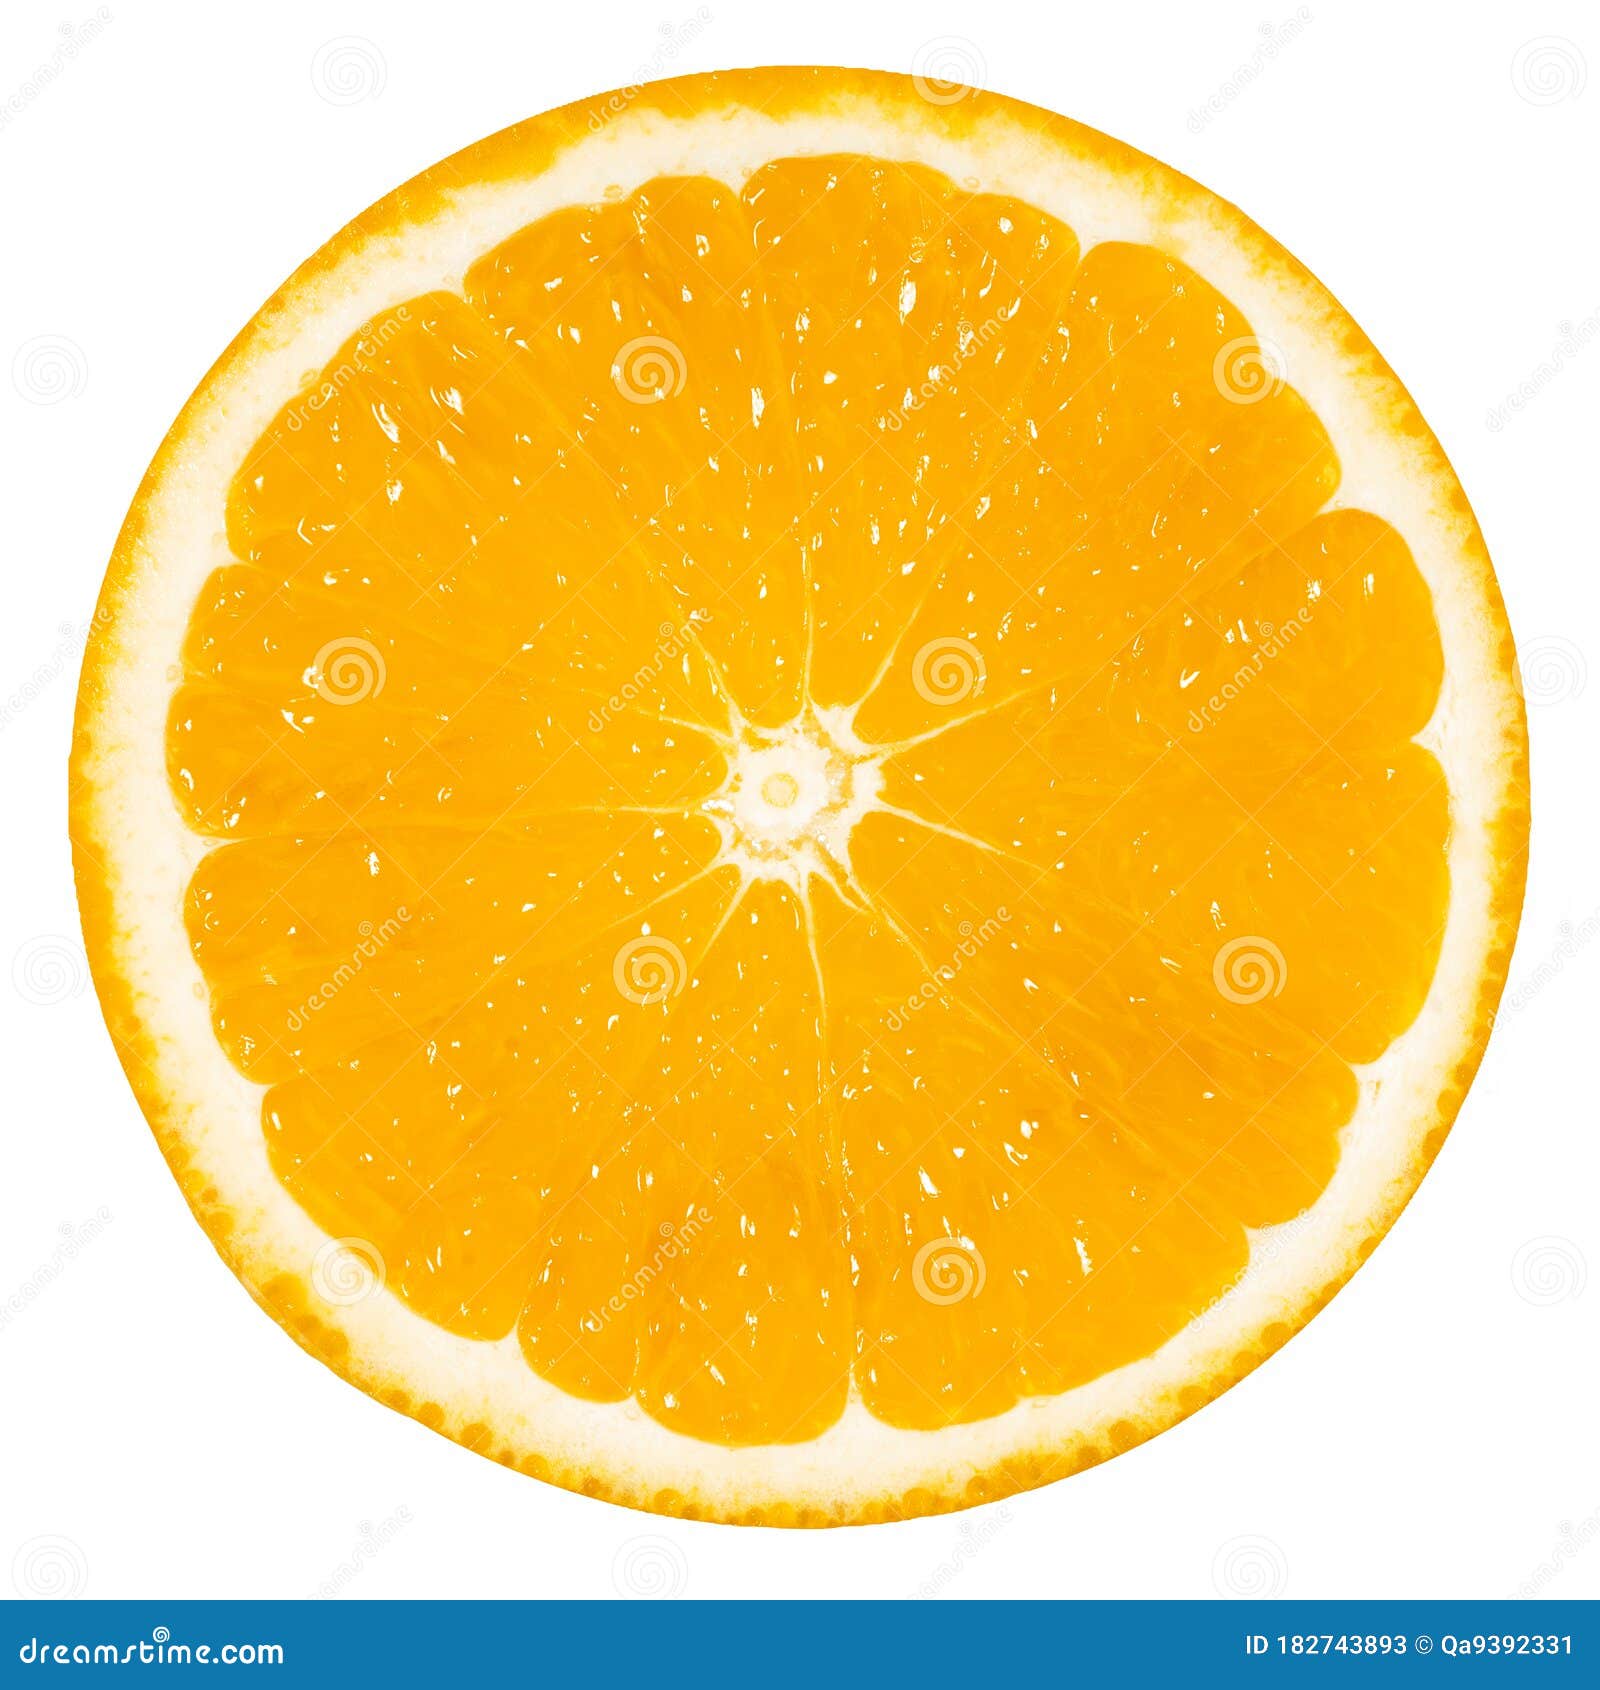 Quả cam (Orange): Quả cam tươi ngon, mát lạnh và đầy nước đã có mặt tại đây. Đây chính là thức quà của mùa hè, với hương vị tươi mới và bổ dưỡng. Hãy tận hưởng hương vị ngọt ngào của quả cam, với hình ảnh sáng tạo và đầy màu sắc. Chắc chắn bạn sẽ thiếp điệu theo giai điệu của quả cam tươi, nhưng tiếc là chỉ qua hình ảnh thôi.